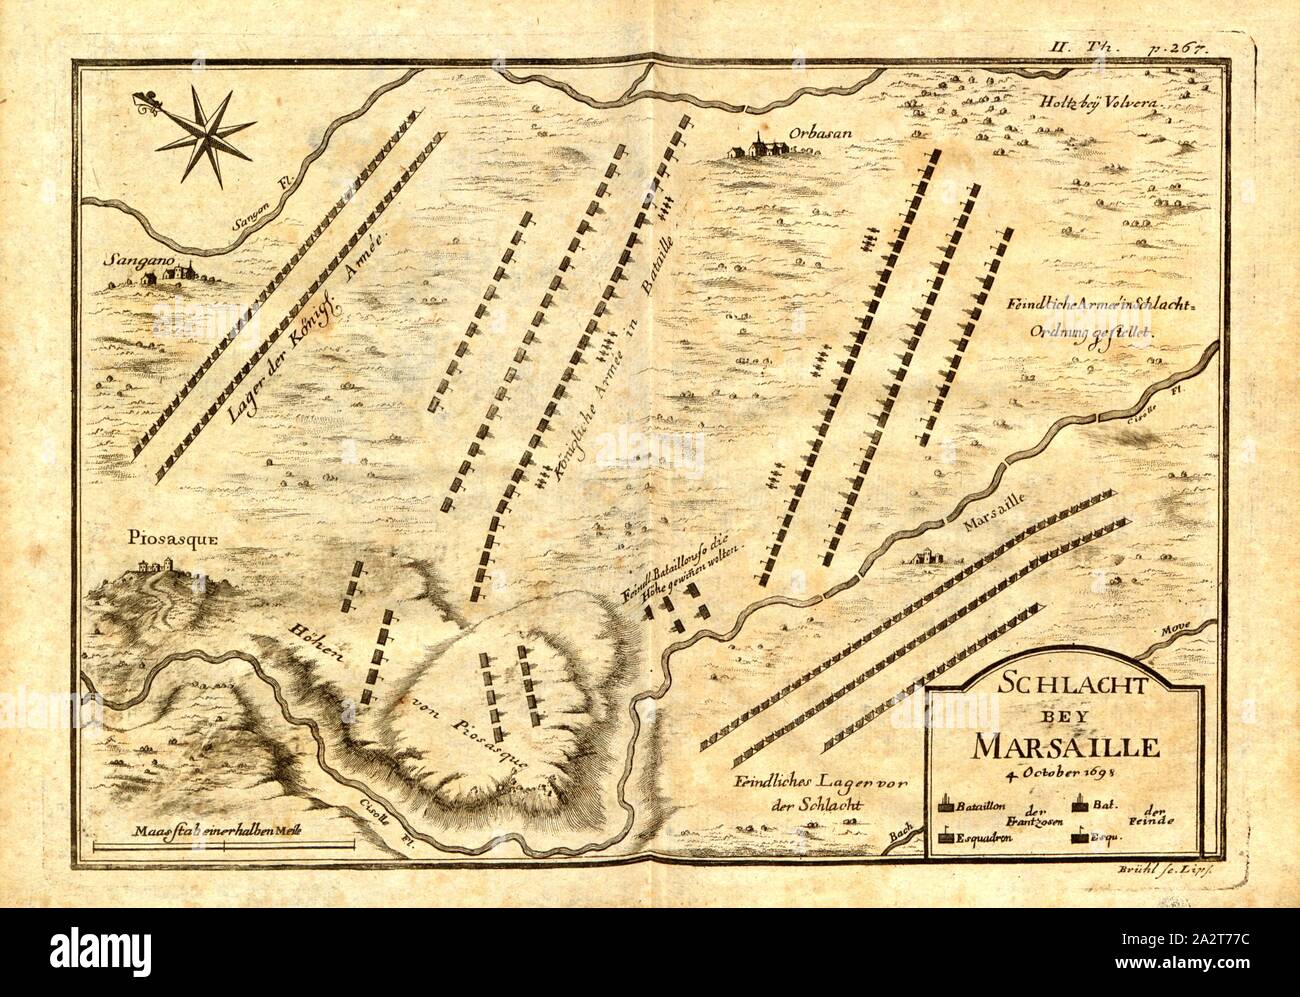 Battle of Marseille, Map of the Battle of Marsaglia on October 4, 1693 (also Battle of Orbassano), Signed: Brühl sc, Fig. 1, II. Th, after p. 266, Brühl, Johann Benjamin (sc.), 1738, Antoine de Pas de Feuquières: Geheime und sonderbare Kriegs-Nachrichten des Marggrafen von Feuquieres. Leipzig: im Weidmannischen Buchladen, 1738 Stock Photo